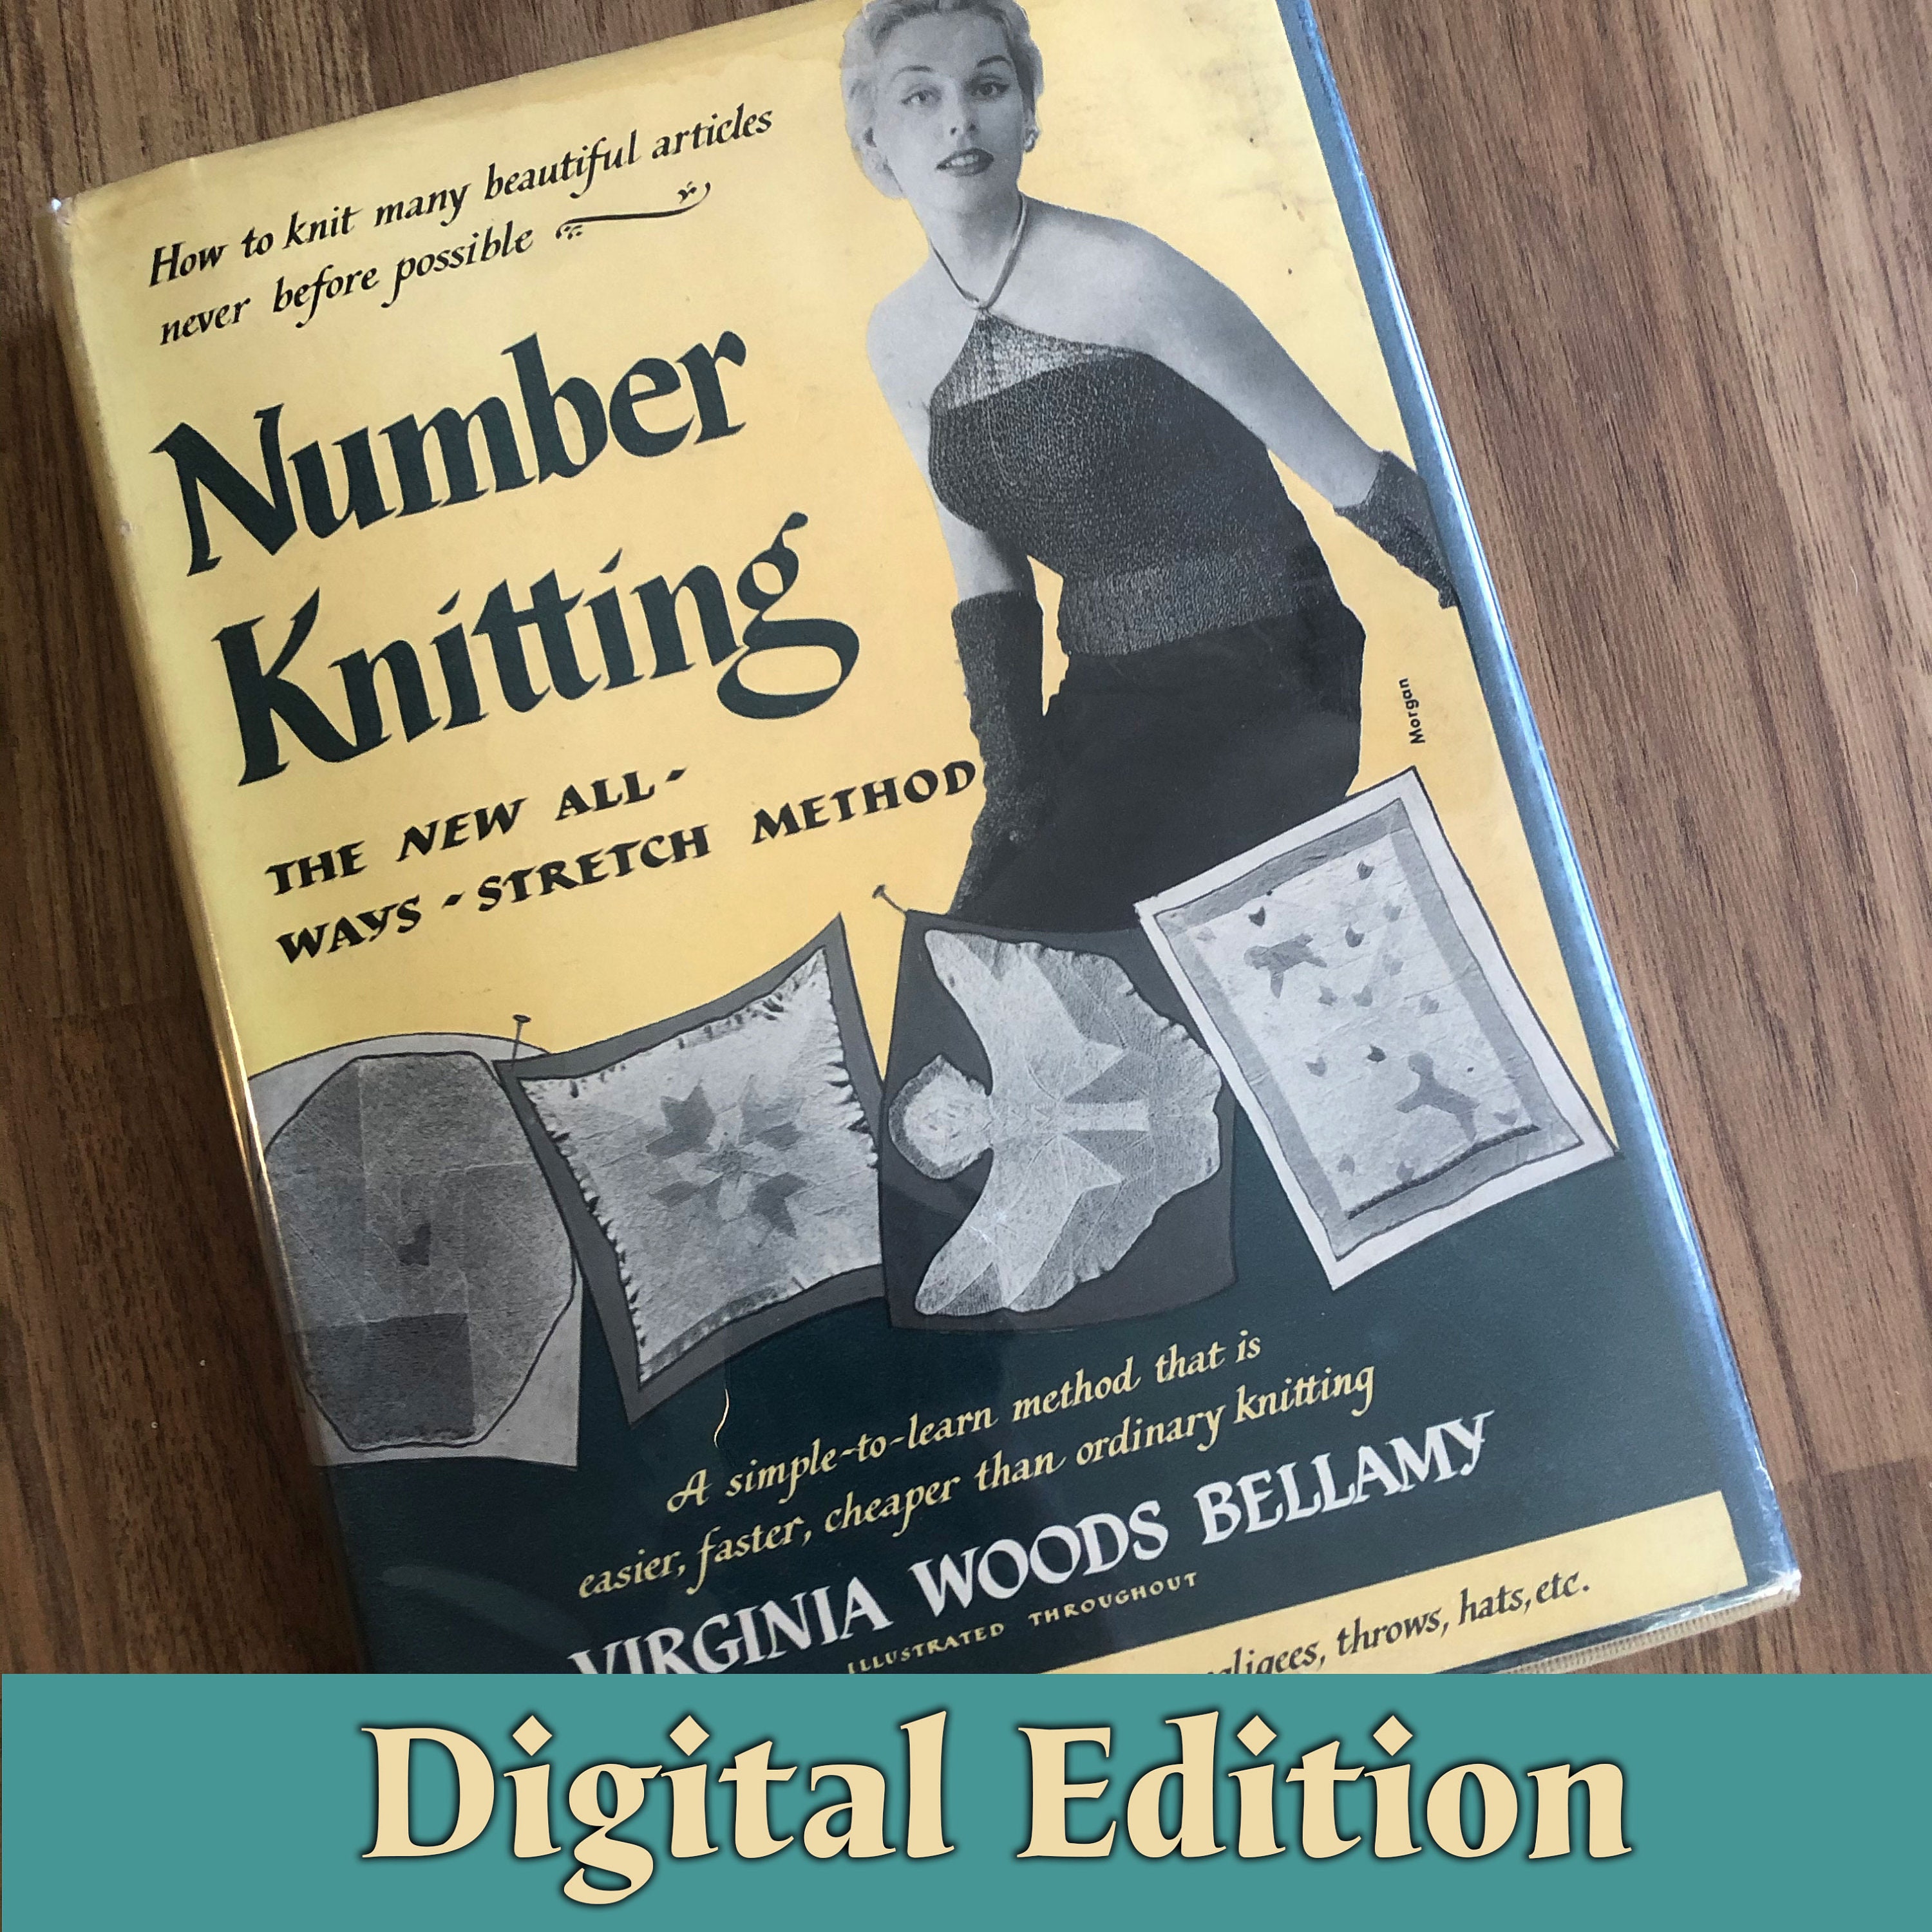 Knitting Books - Choosing The Best Books On Knitting